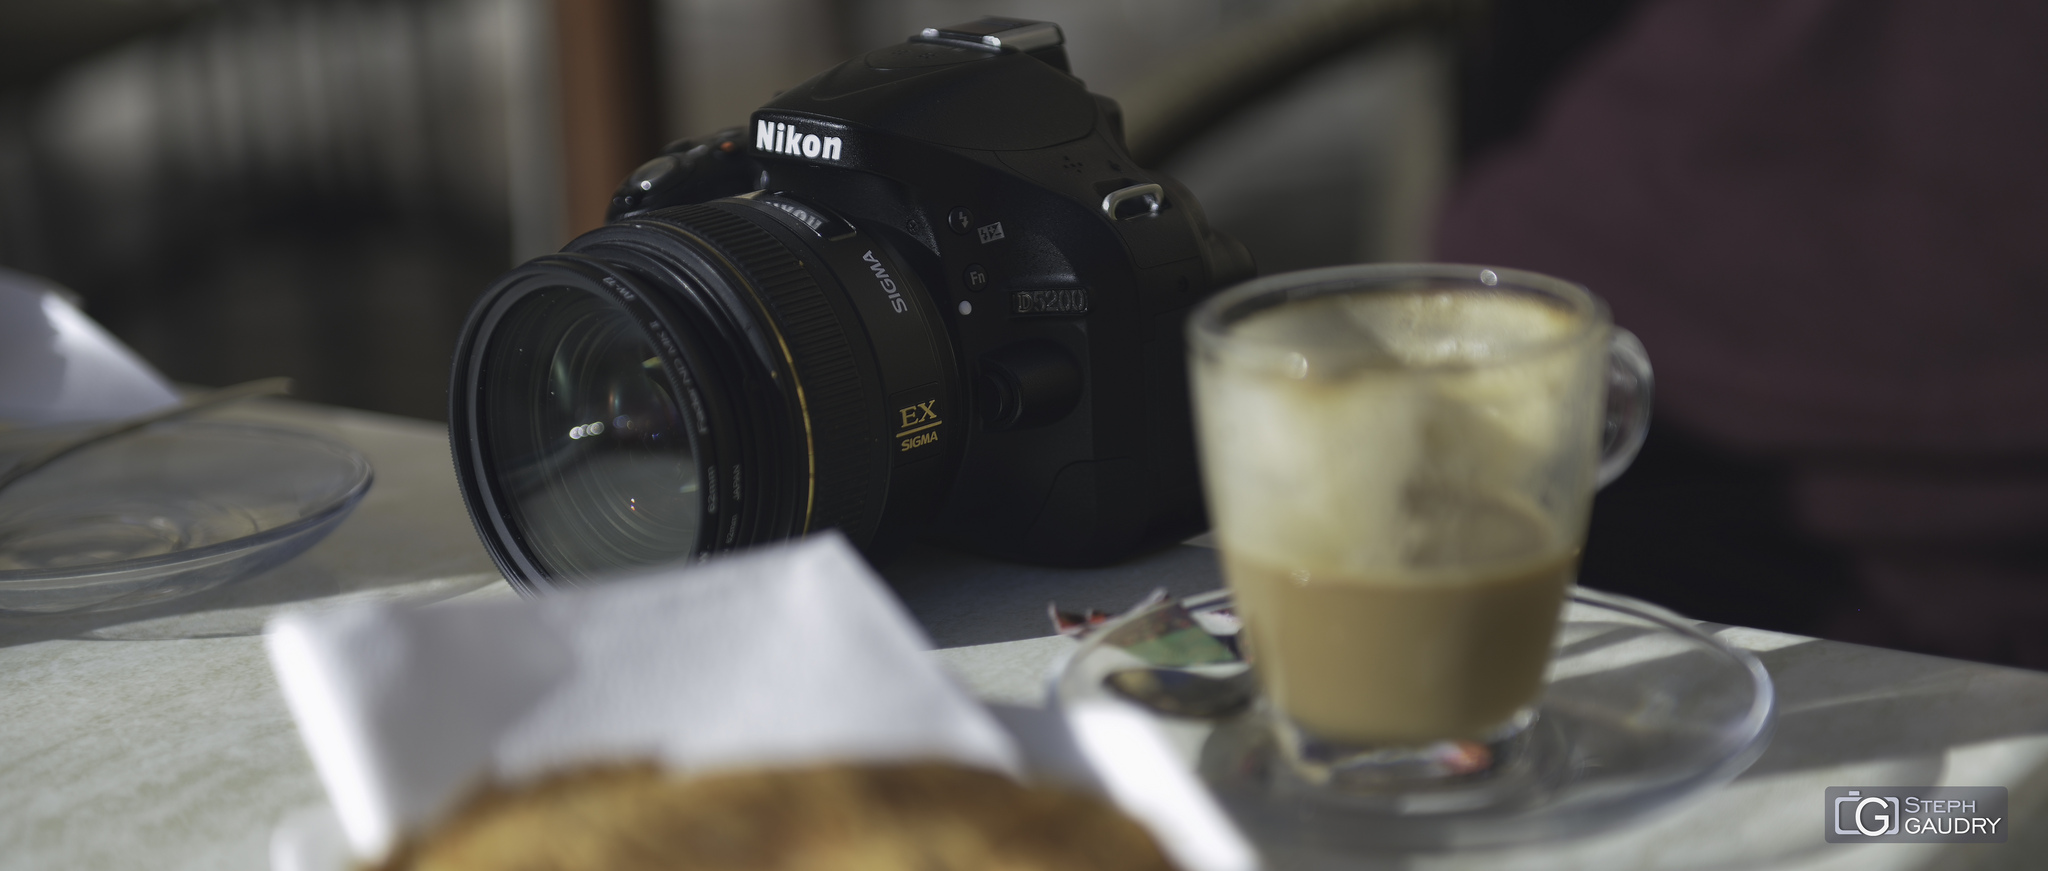 Costa Brava / Nikon D5200 - Sigma 30mm f1,4 EX DC HSM